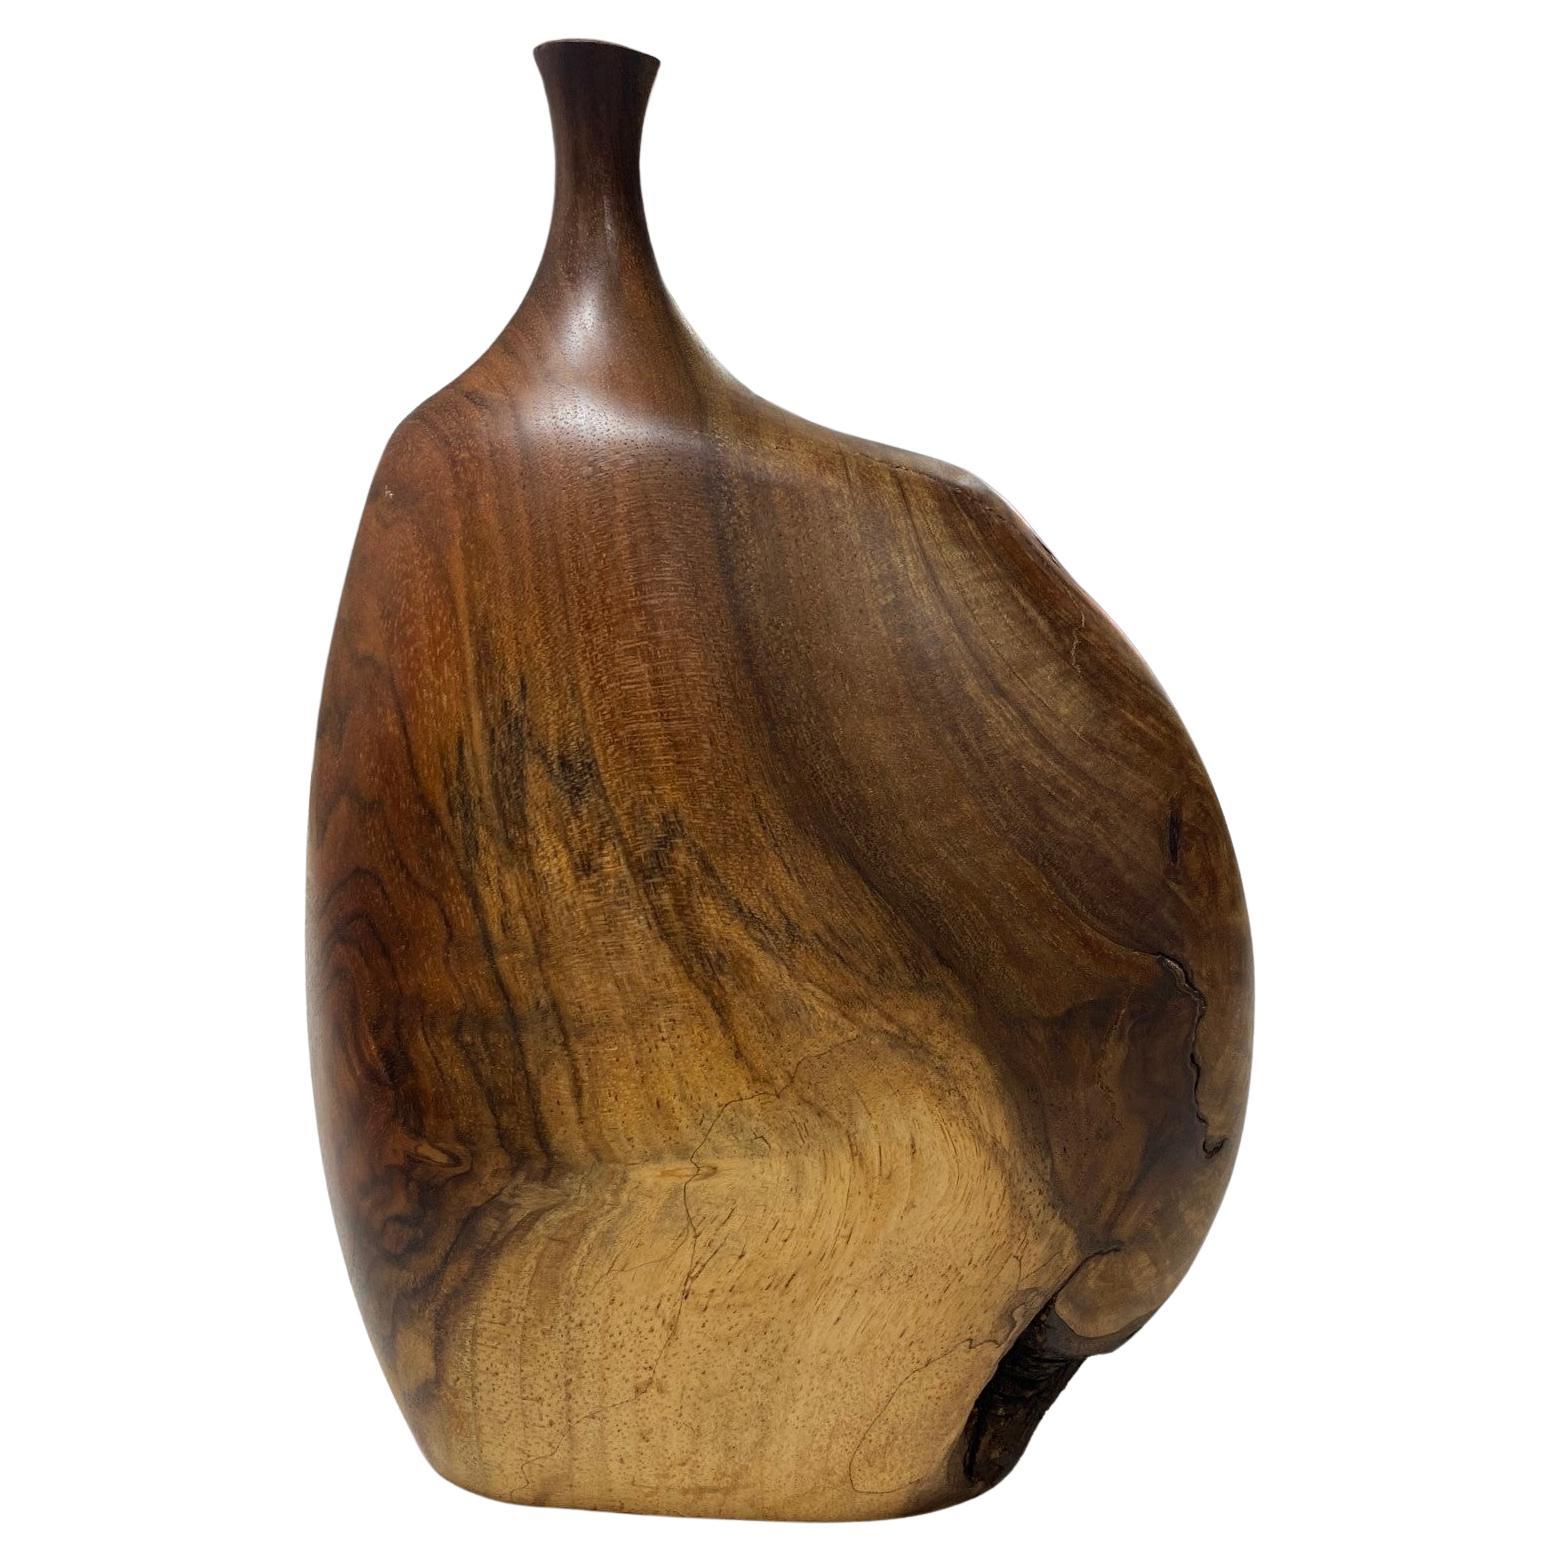 Vase en bois naturel organique tourné signé de l'artiste californien Doug Ayers